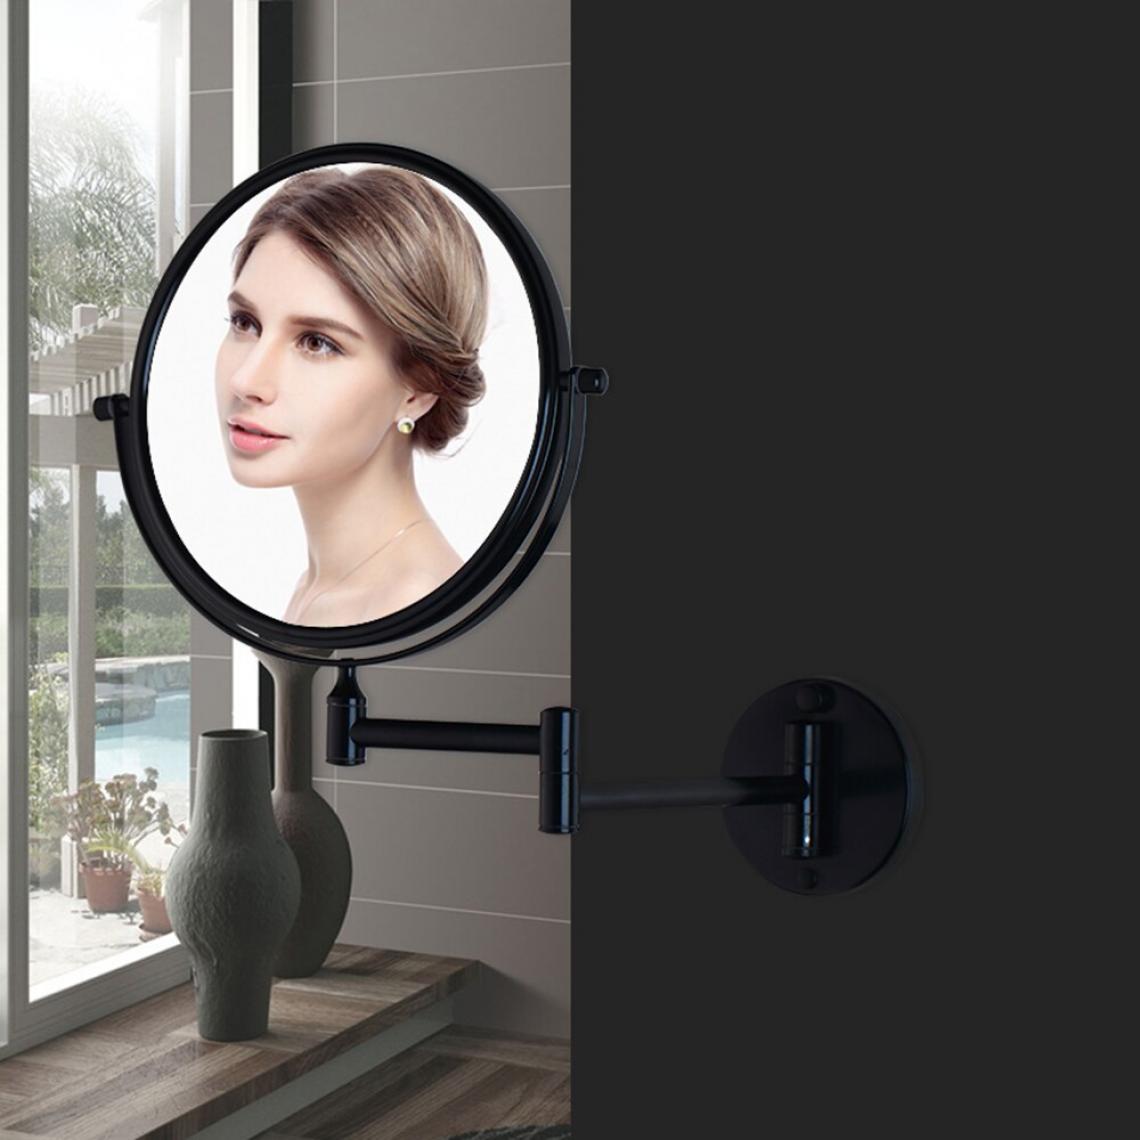 Universal - Miroir de maquillage Miroir de maquillage professionnel Santé Beauté Montage mural Extension Pliage 360 ° Rotation | Miroir de bain(Le noir) - Miroir de salle de bain